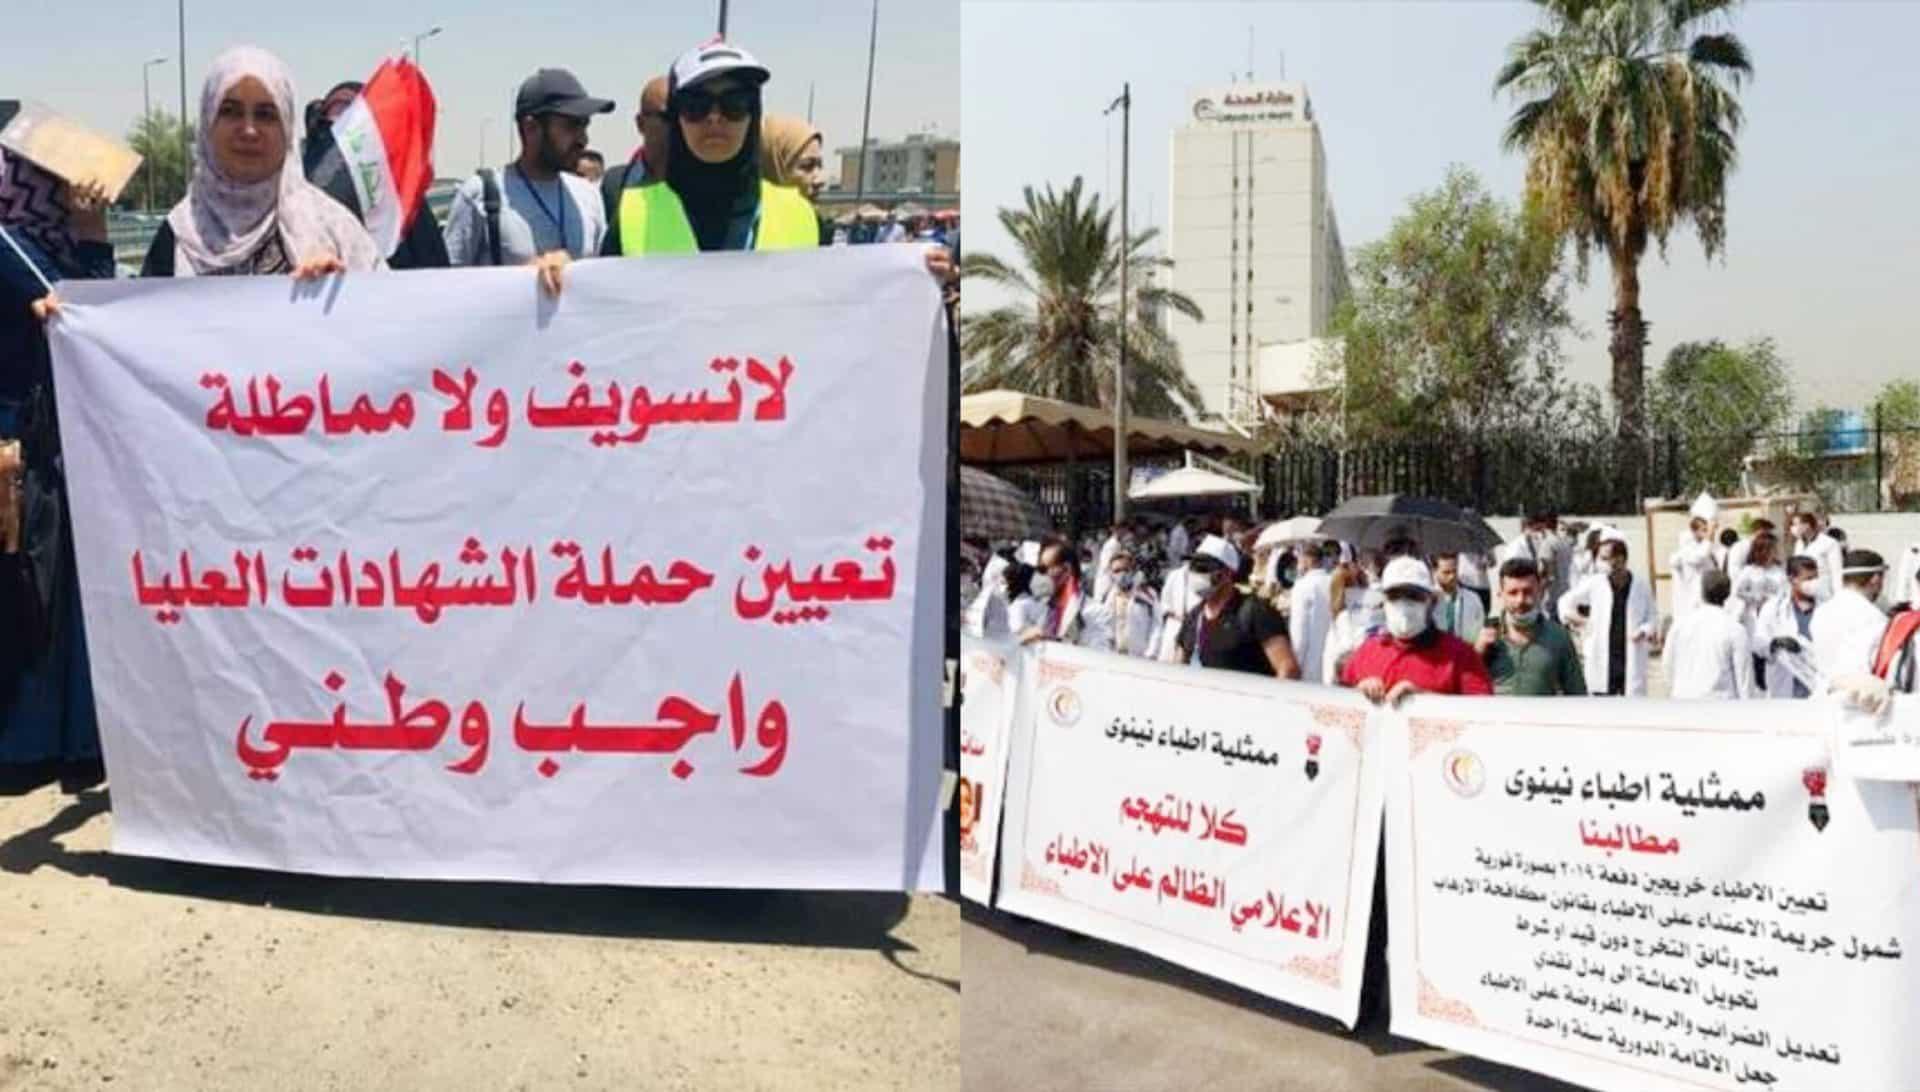 مظاهرات في العراق لأجل خريجي الصحة alarabtrend.com